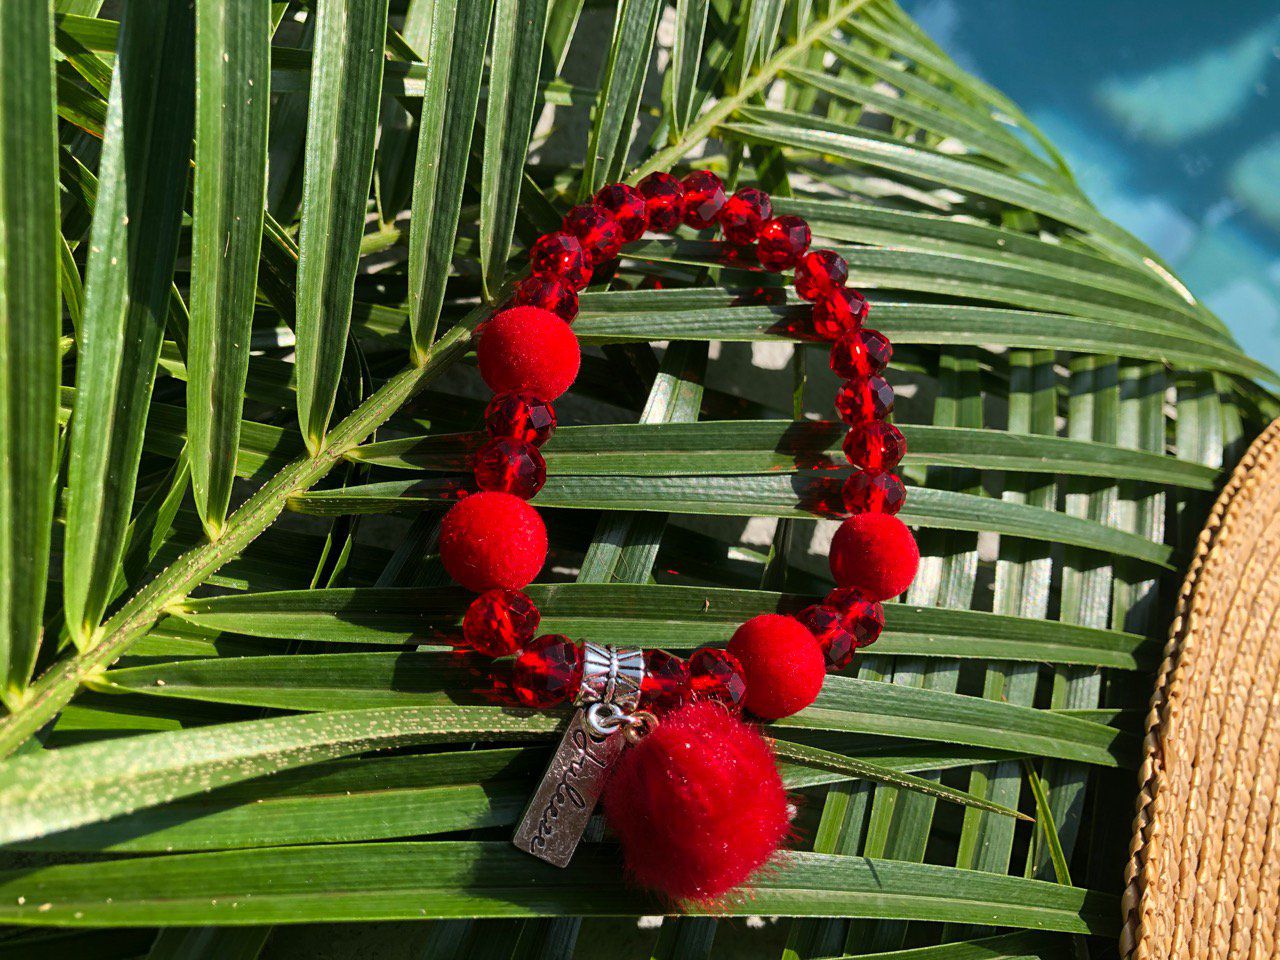 Bracelet femme rouge pompon